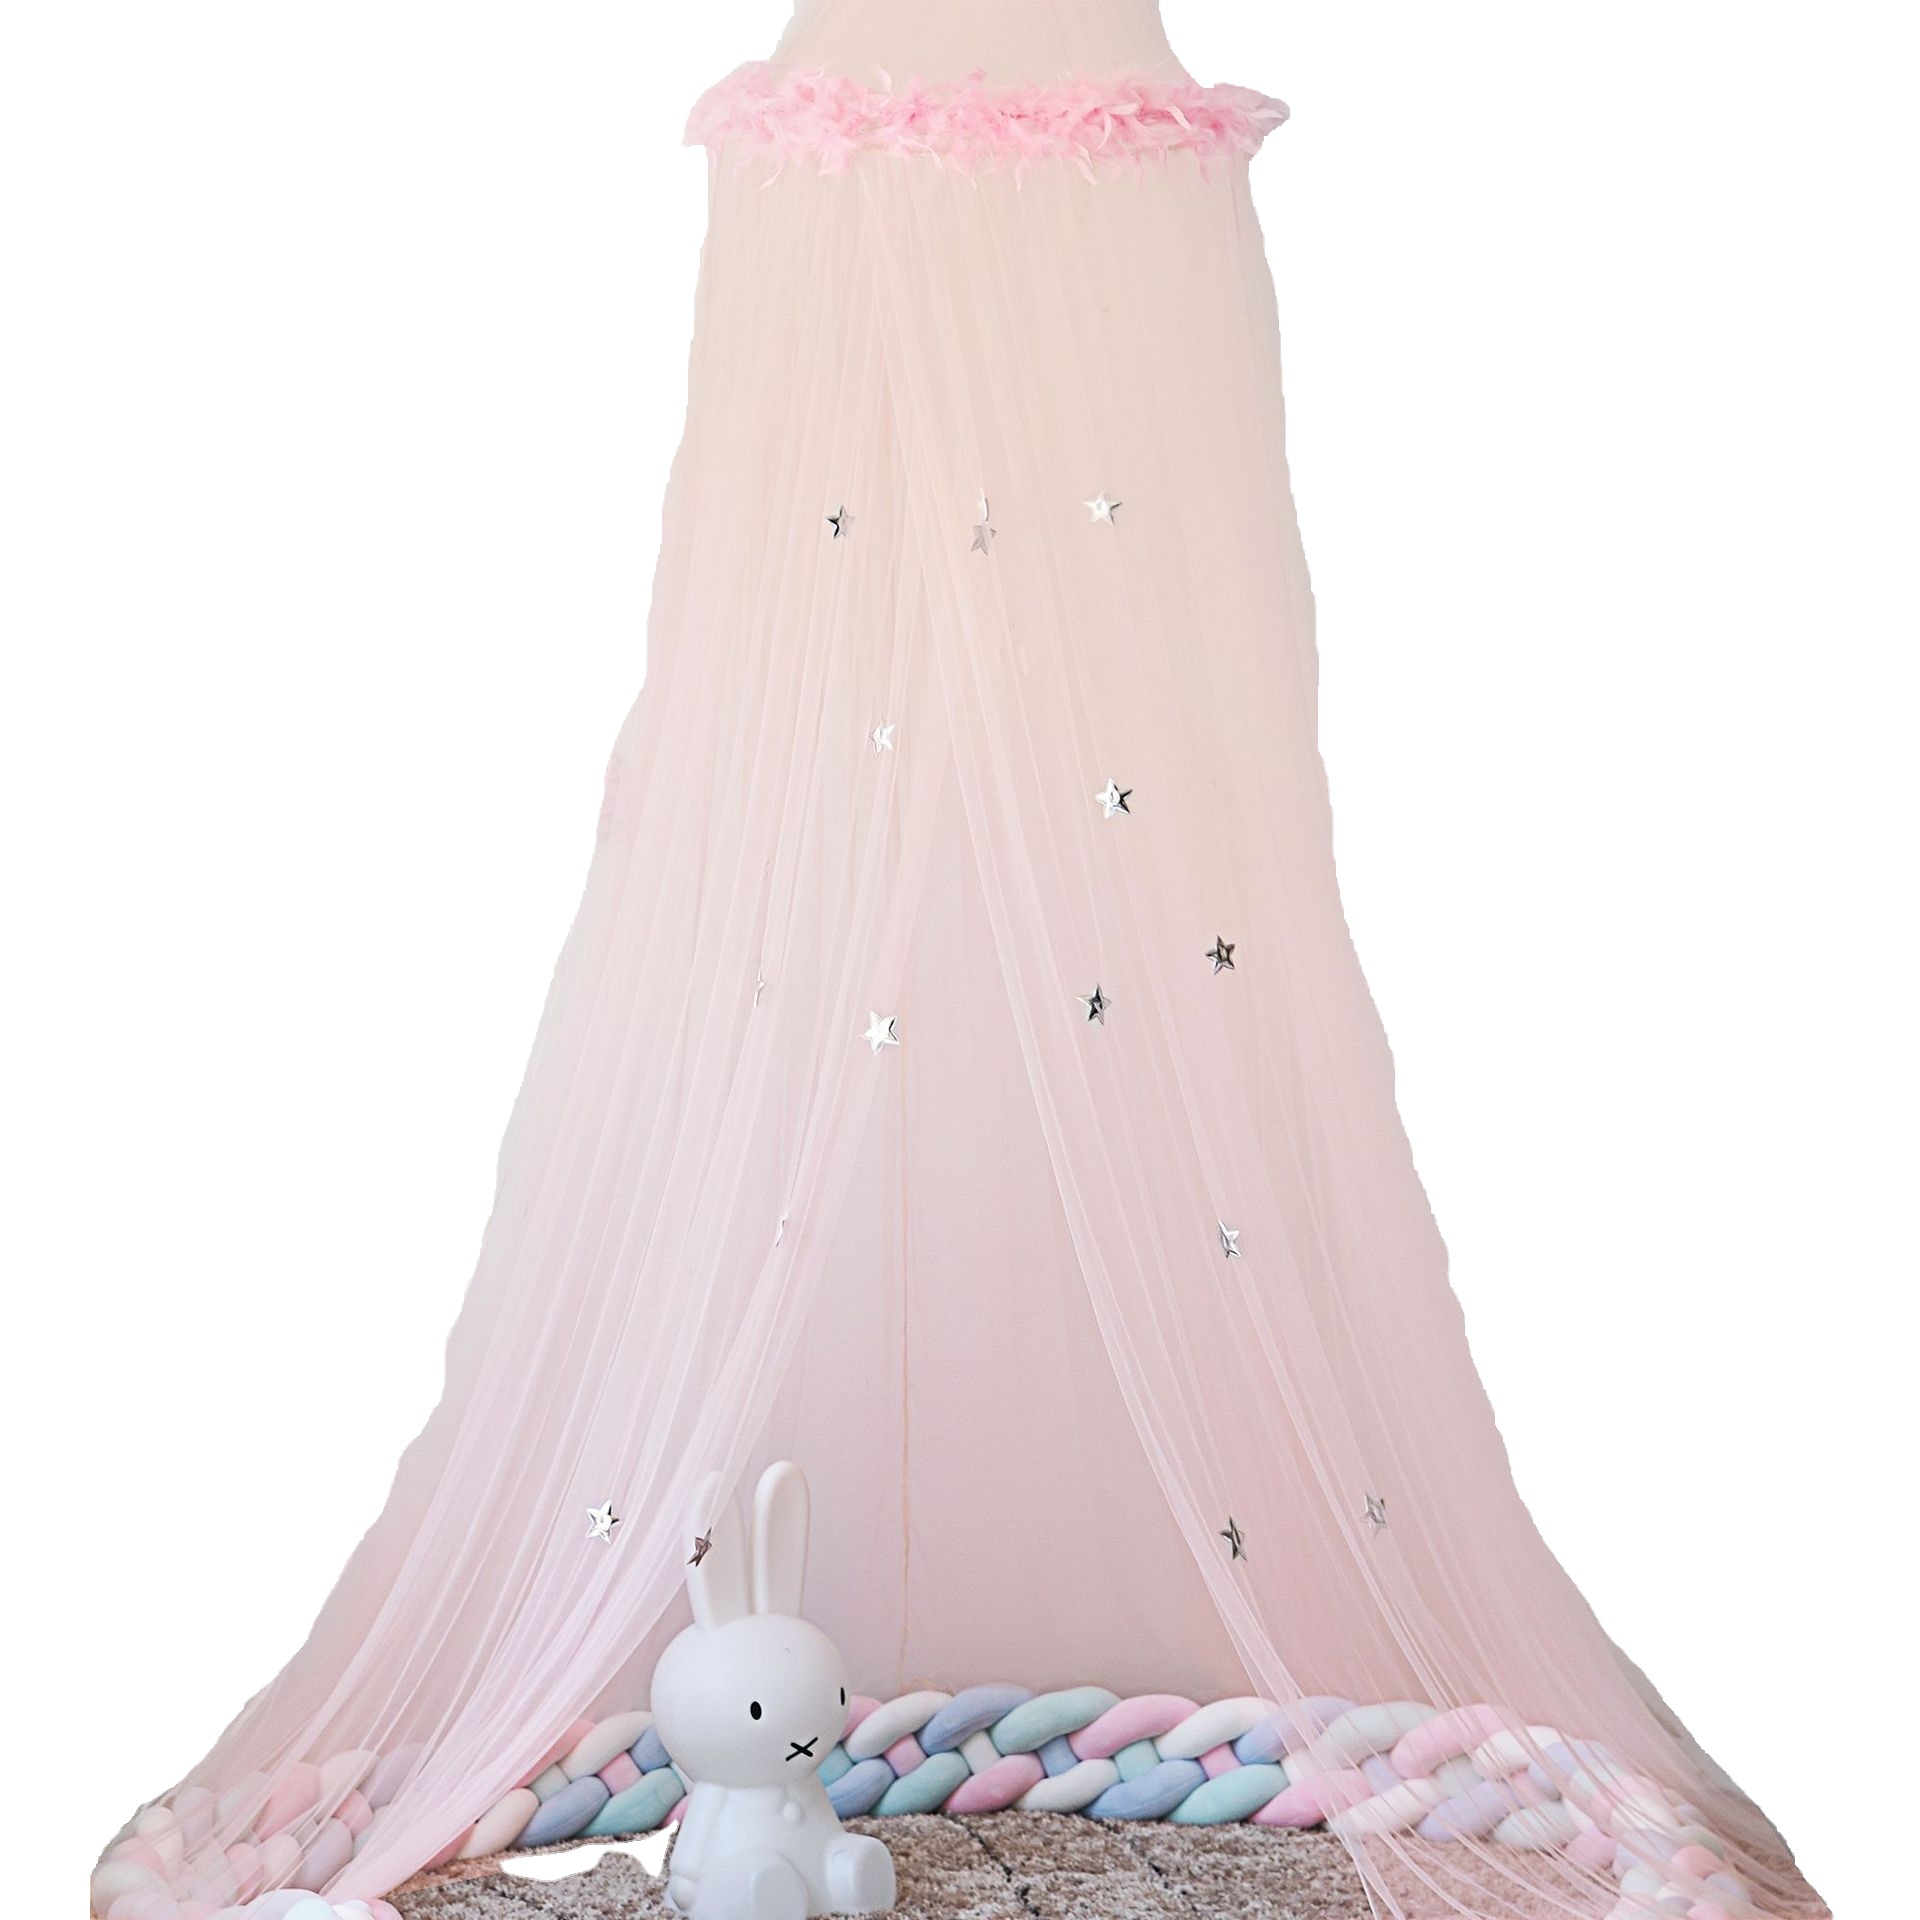 Bett Baldachin mit Feder Sterne Dekoration Moskitonetz für Kinderzimmer